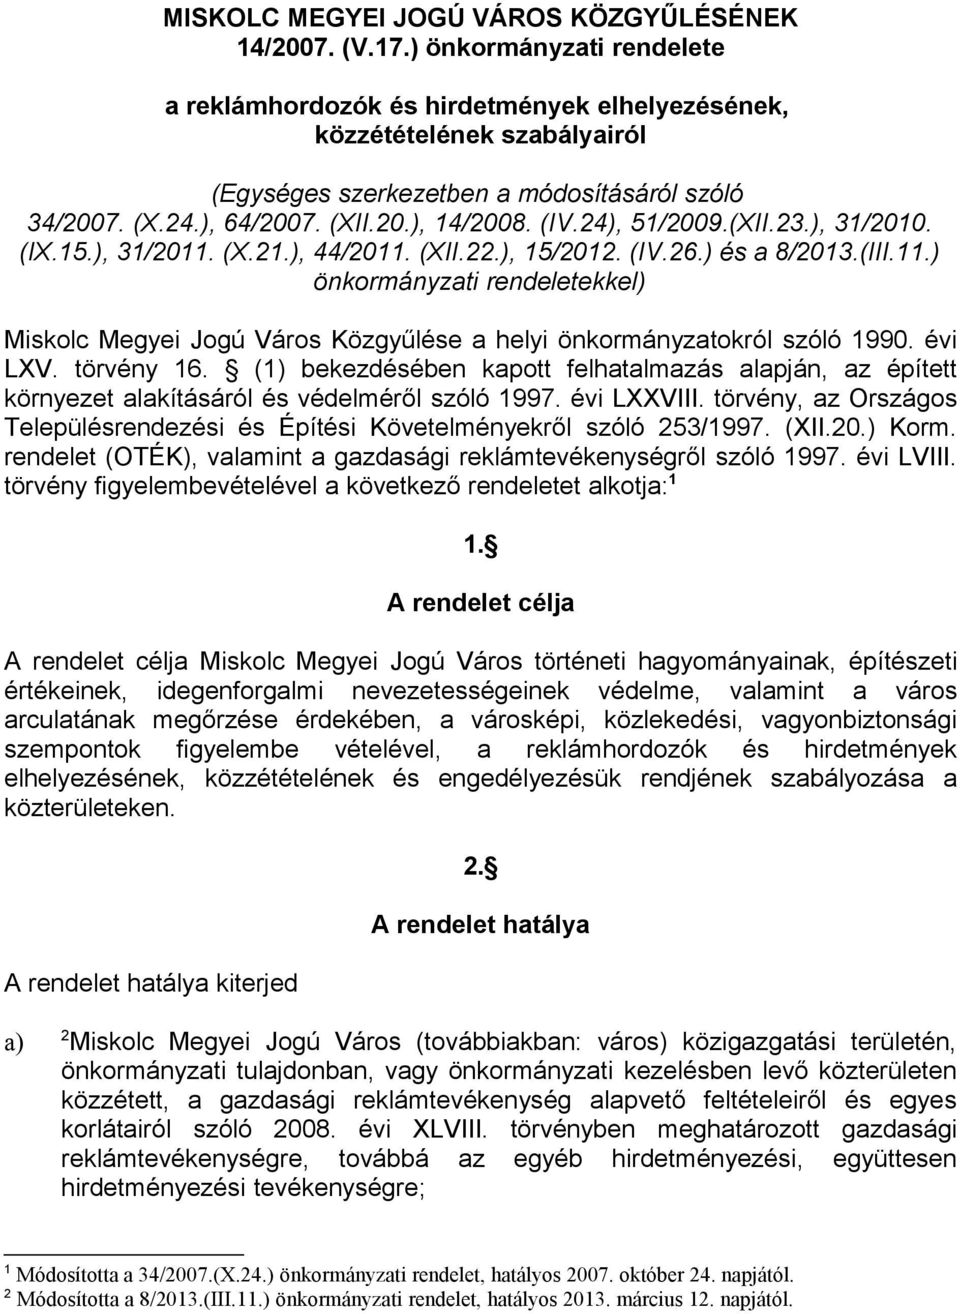 24), 51/2009.(XII.23.), 31/2010. (IX.15.), 31/2011. (X.21.), 44/2011. (XII.22.), 15/2012. (IV.26.) és a 8/2013.(III.11.) önkormányzati rendeletekkel) Miskolc Megyei Jogú Város Közgyűlése a helyi önkormányzatokról szóló 1990.